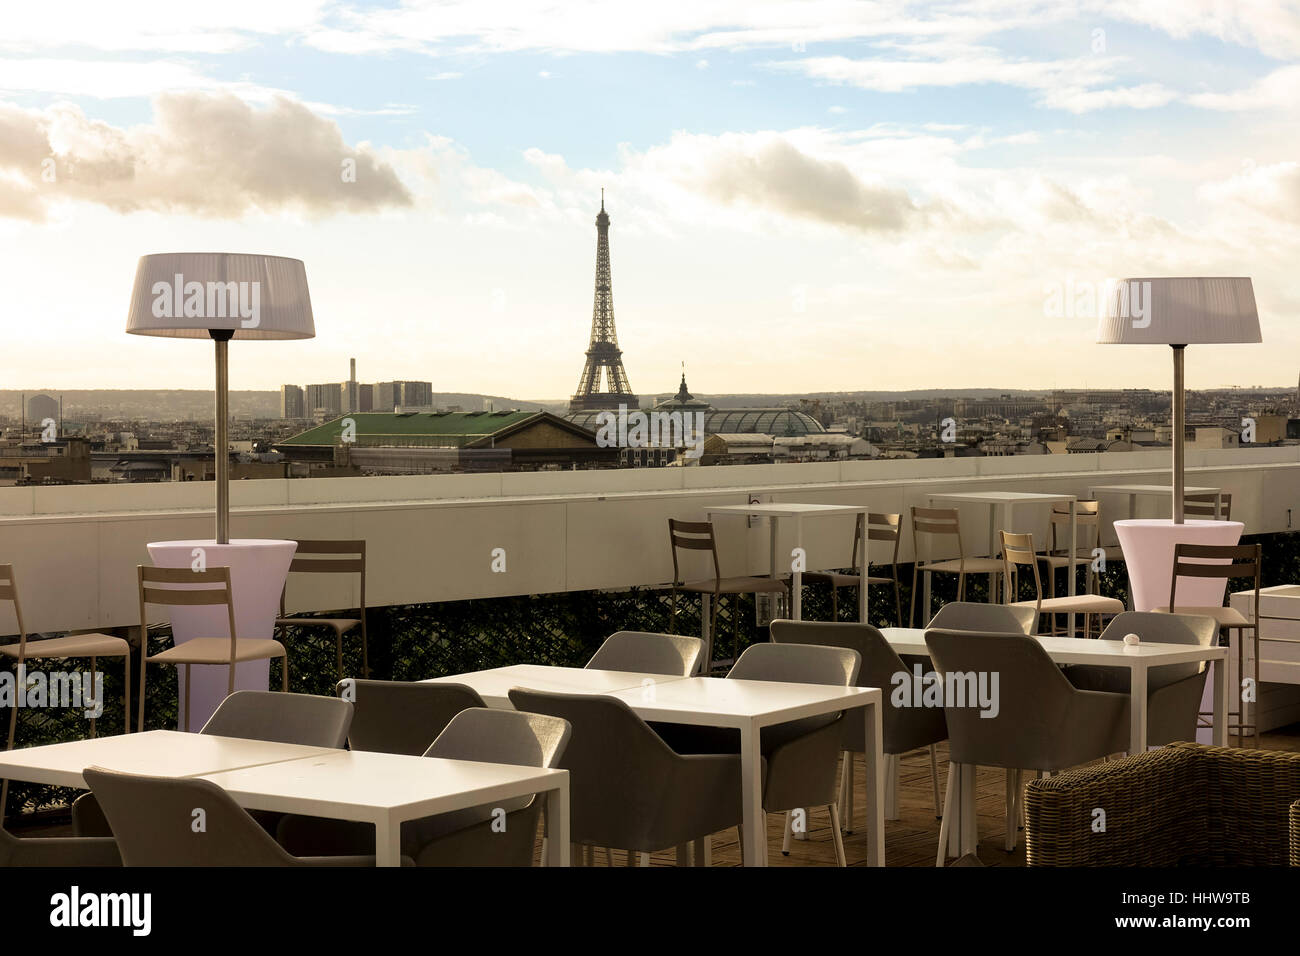 Eiffel Tower Restaurant (@eiffeltowerrestaurant) • Instagram photos and  videos